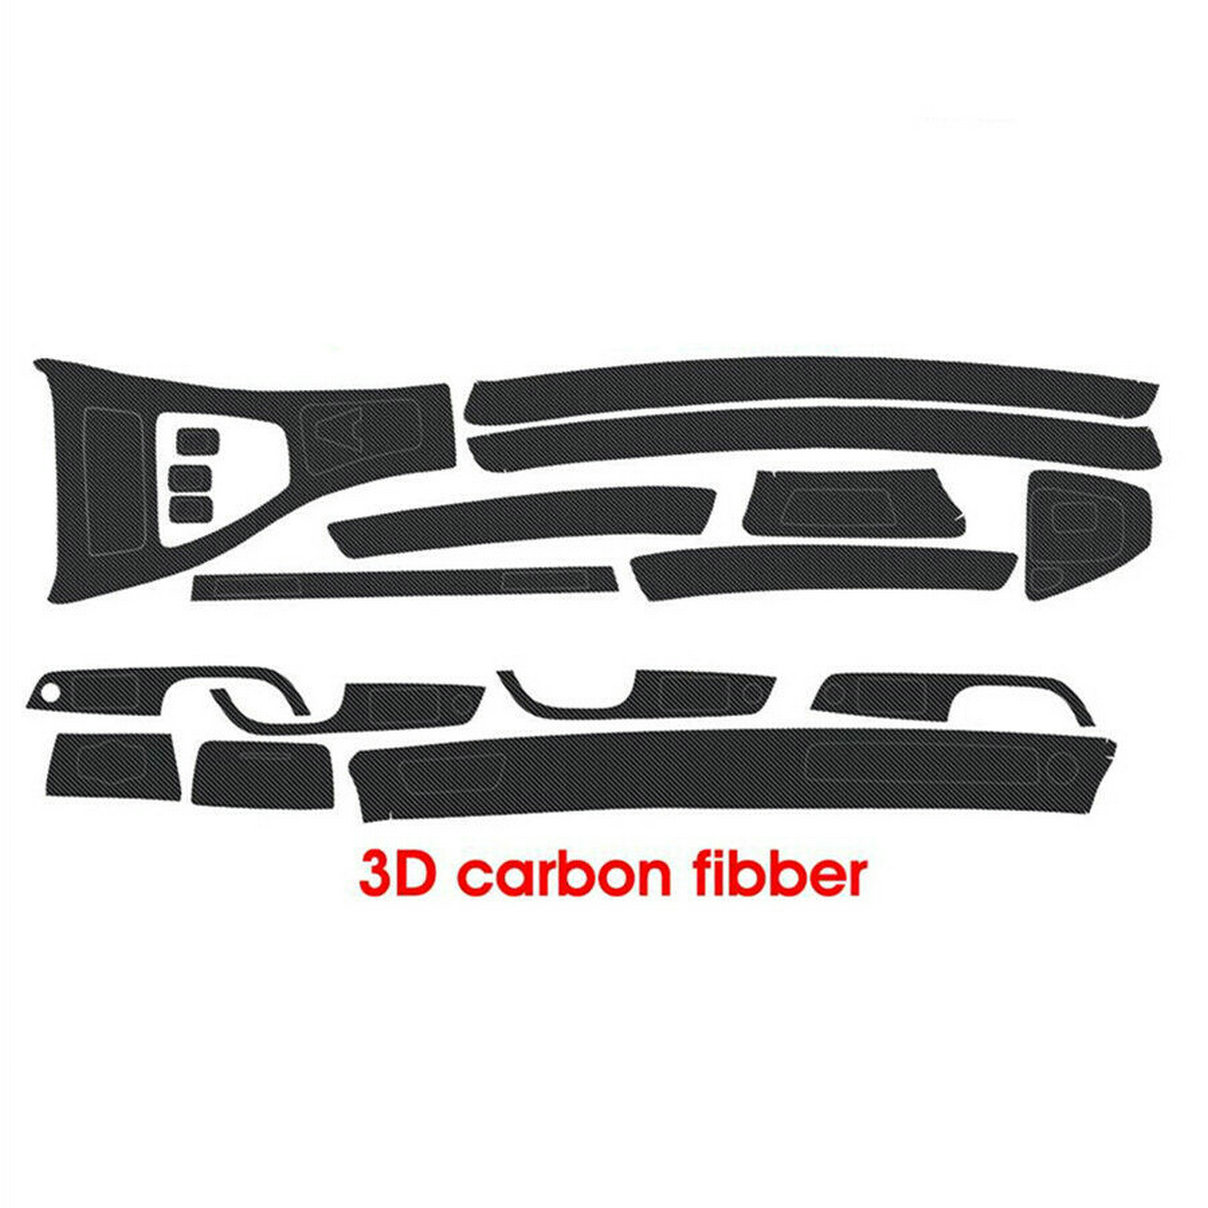  Dashboard Center Console AC Air Conditioner Decal Trim Carbon  Fiber Sticker fits for BMW E90 E92 2006 2007 2008 2009 2010 2011 Car  Accessories : Automotive